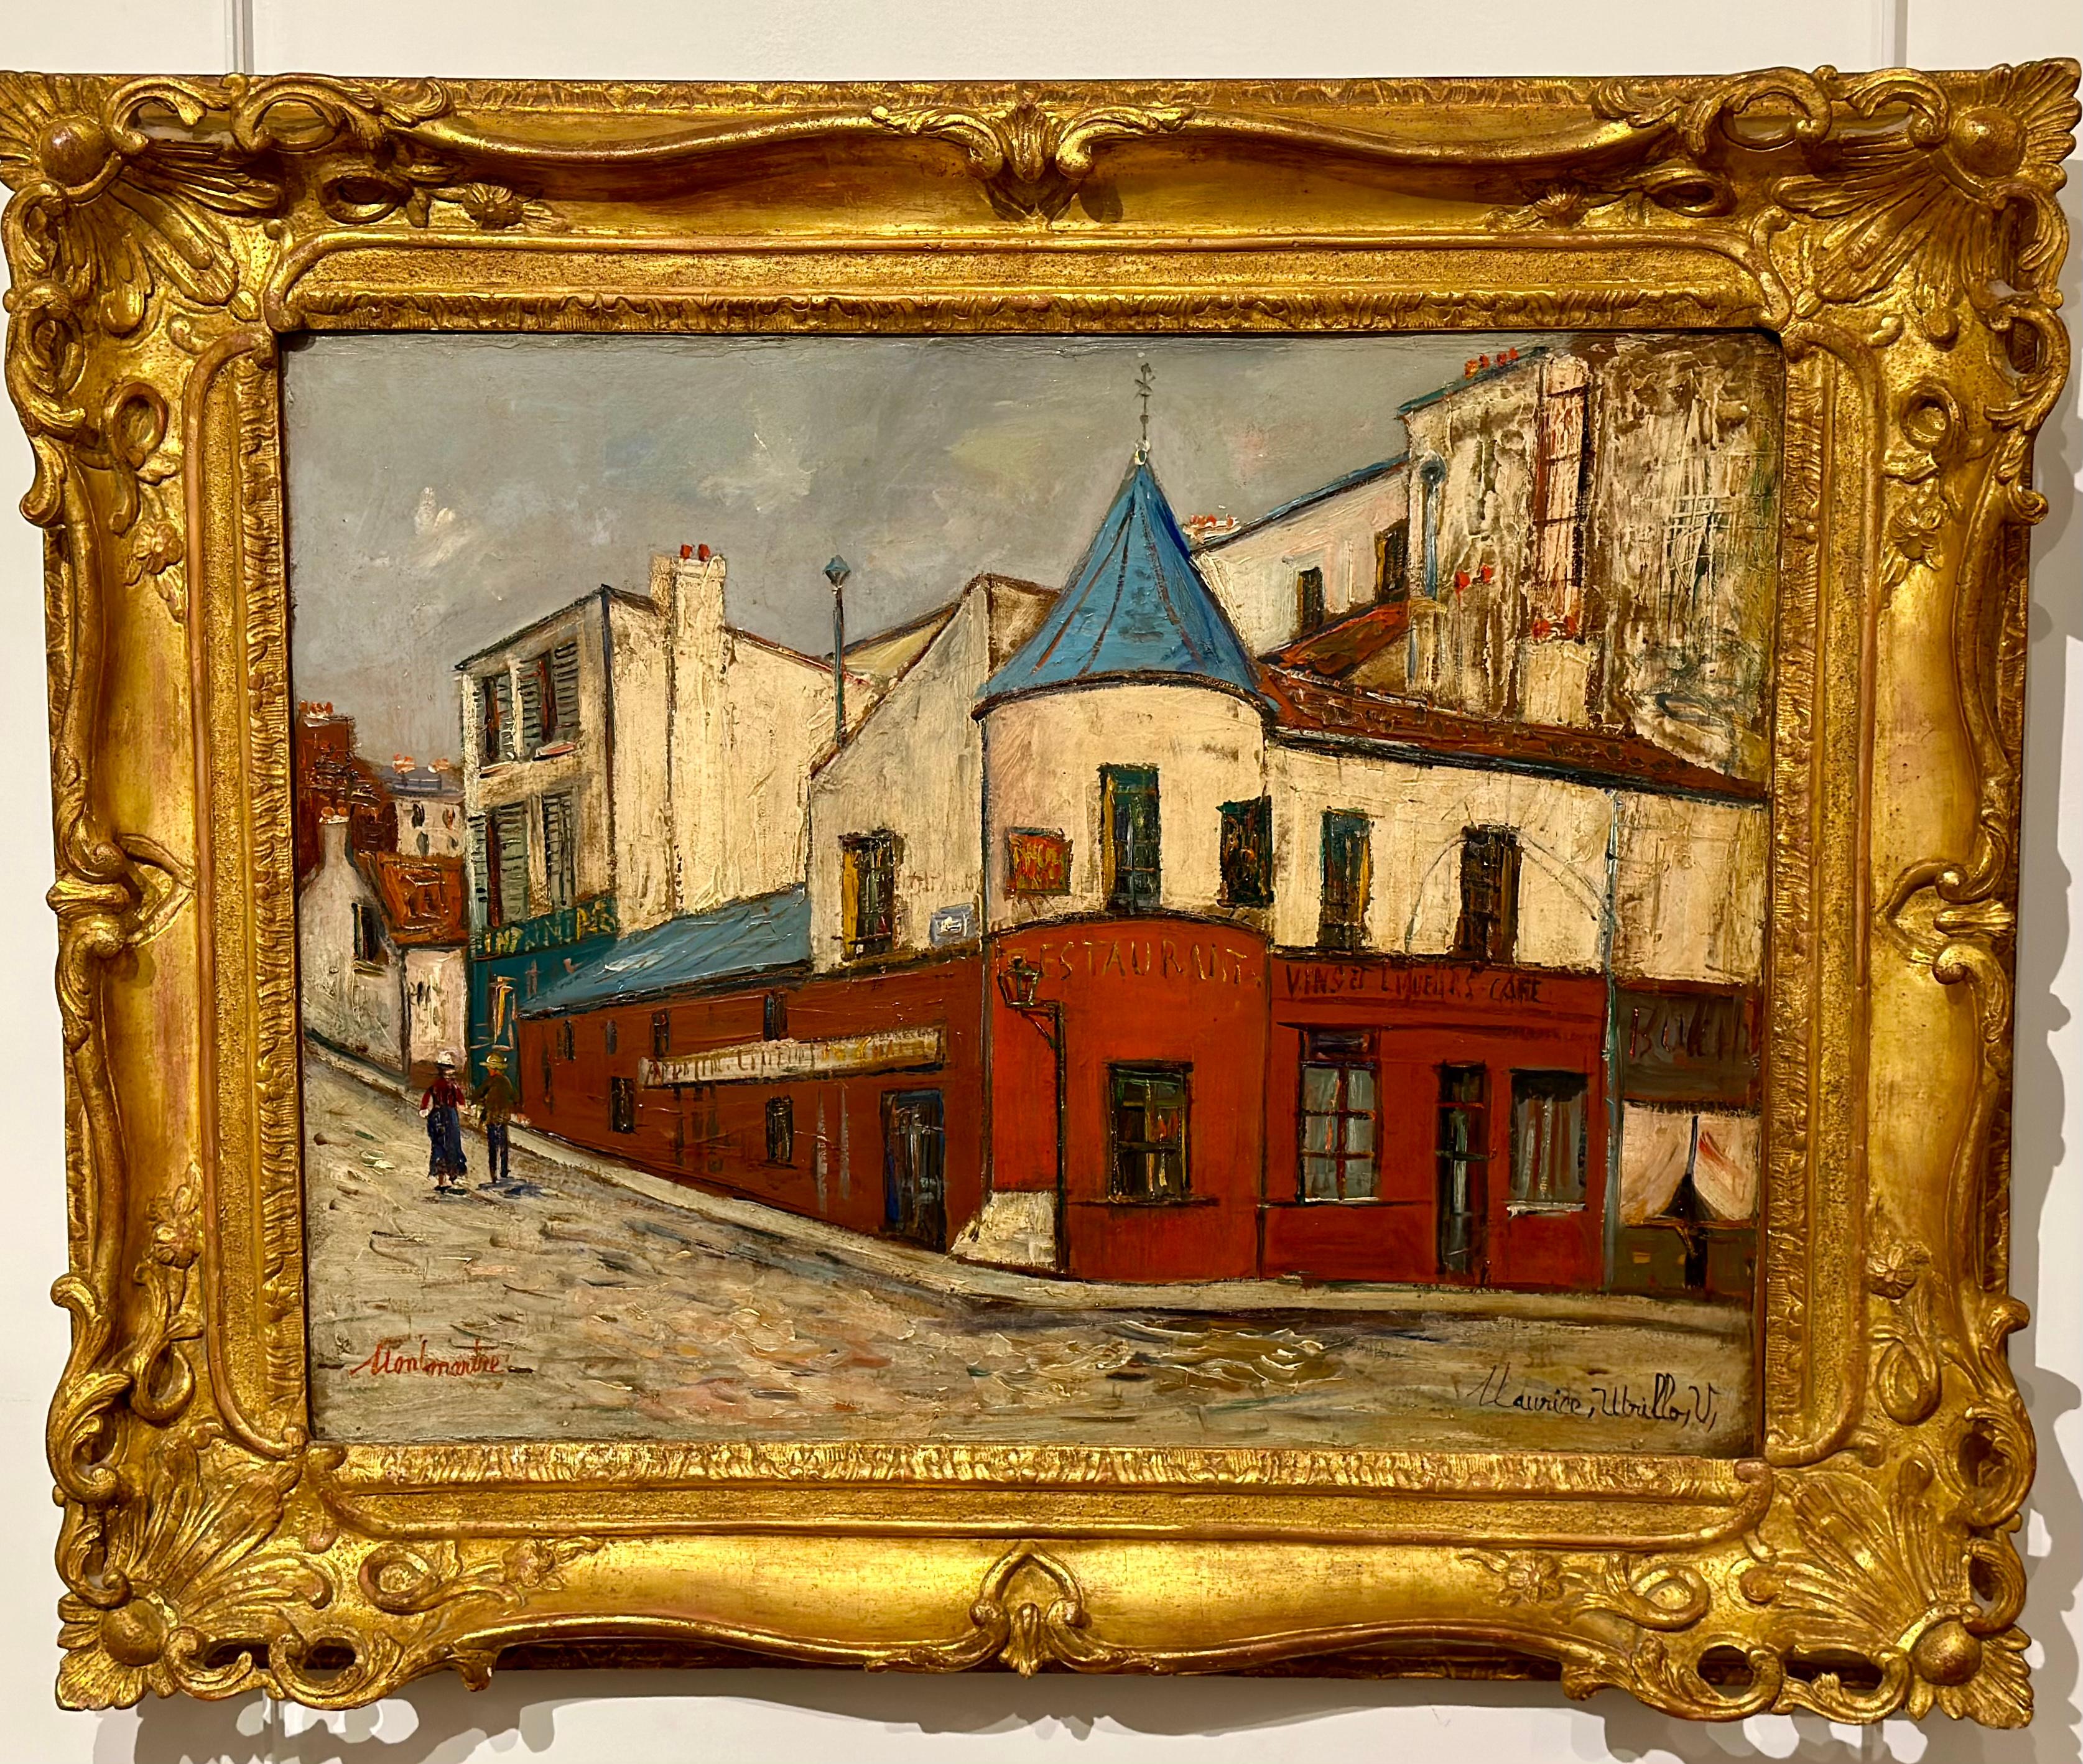 MAURICE UTRILLO
PARIS, 1883 - DAX, 1955)
Le Restaurant de la Tourelle à Montmartre
Vers 1930
Huile sur toile
49,2 x 64,6 cm.
Signée en bas à droite 